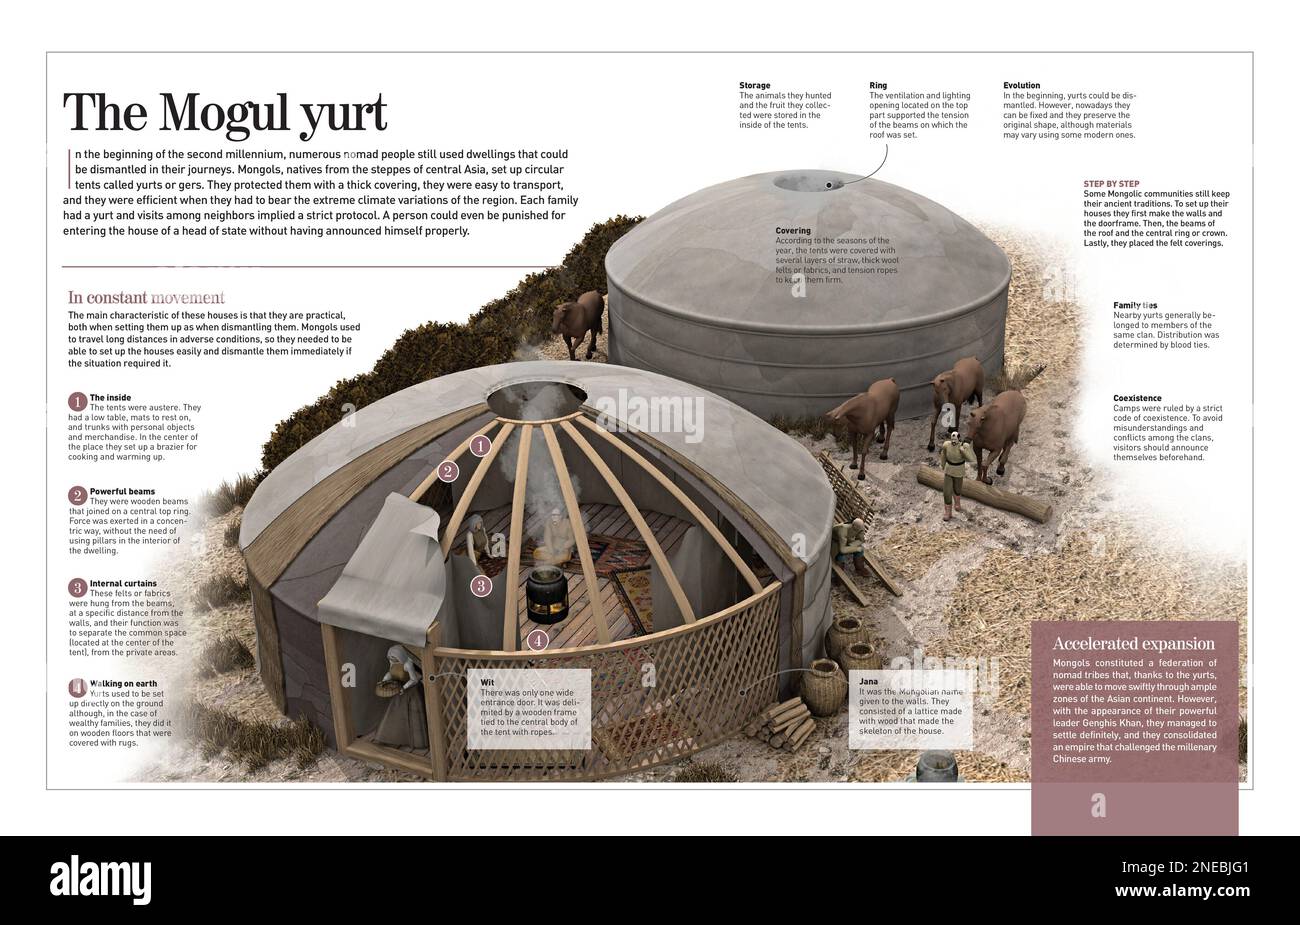 Infografik über die Jurte Mogul, eine Art mobiles Haus, das von den Muscheln seit 1200 (Mittelalter) bis heute genutzt wird. [Adobe InDesign (.indd); 4960x8503]. Stockfoto